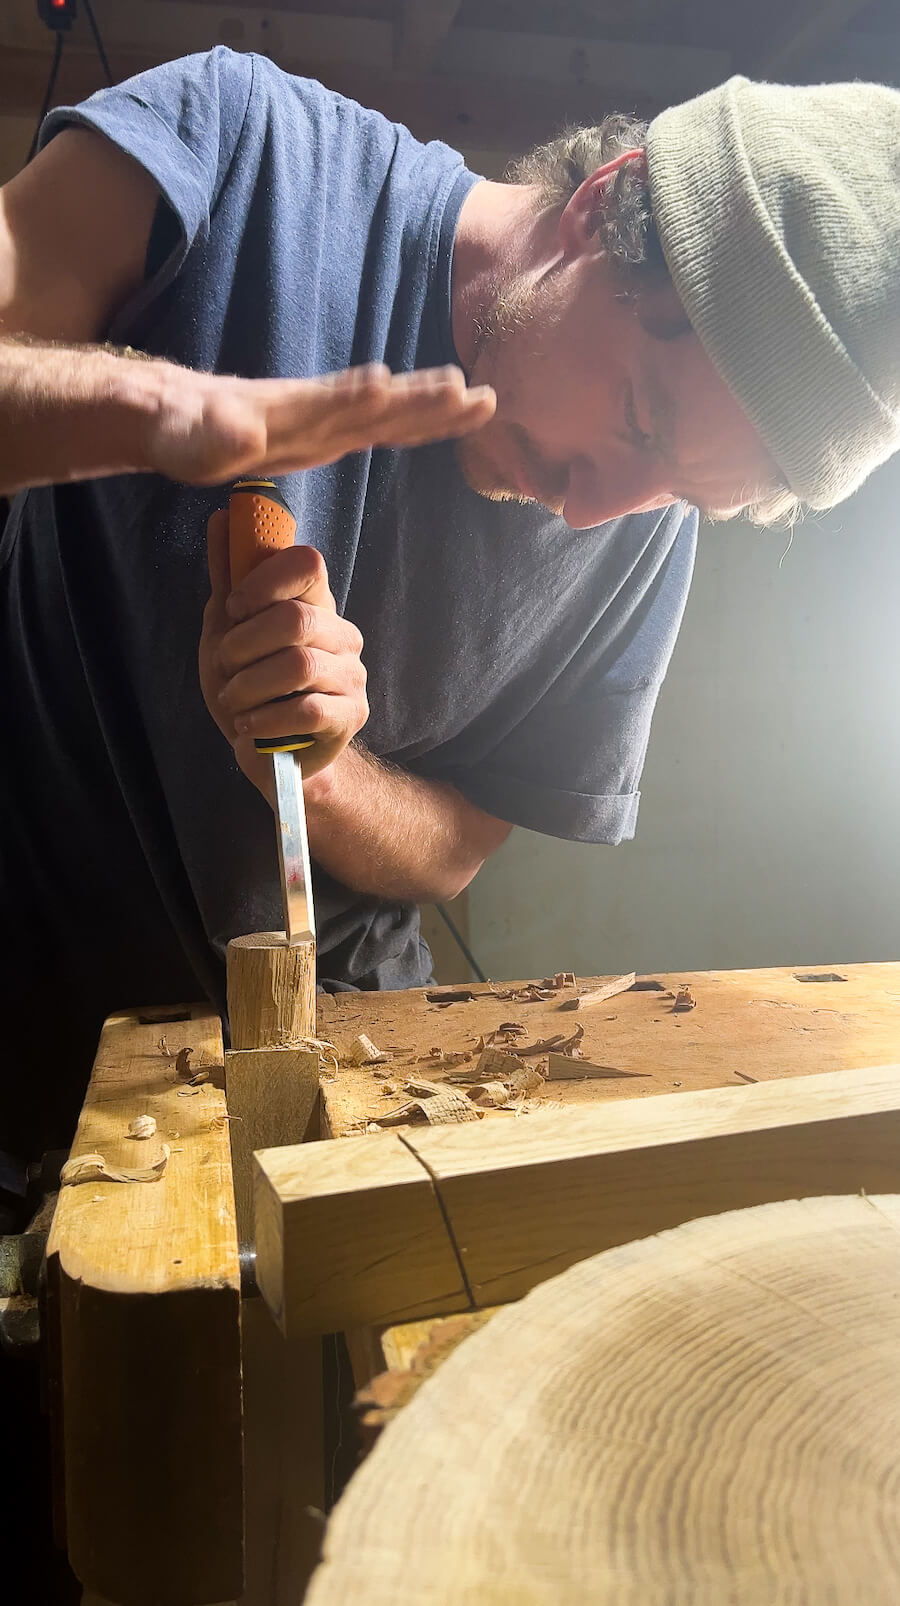 Lavori di riparazione - Promuoviamo la sostenibilità e ripariamo mobili in legno massiccio